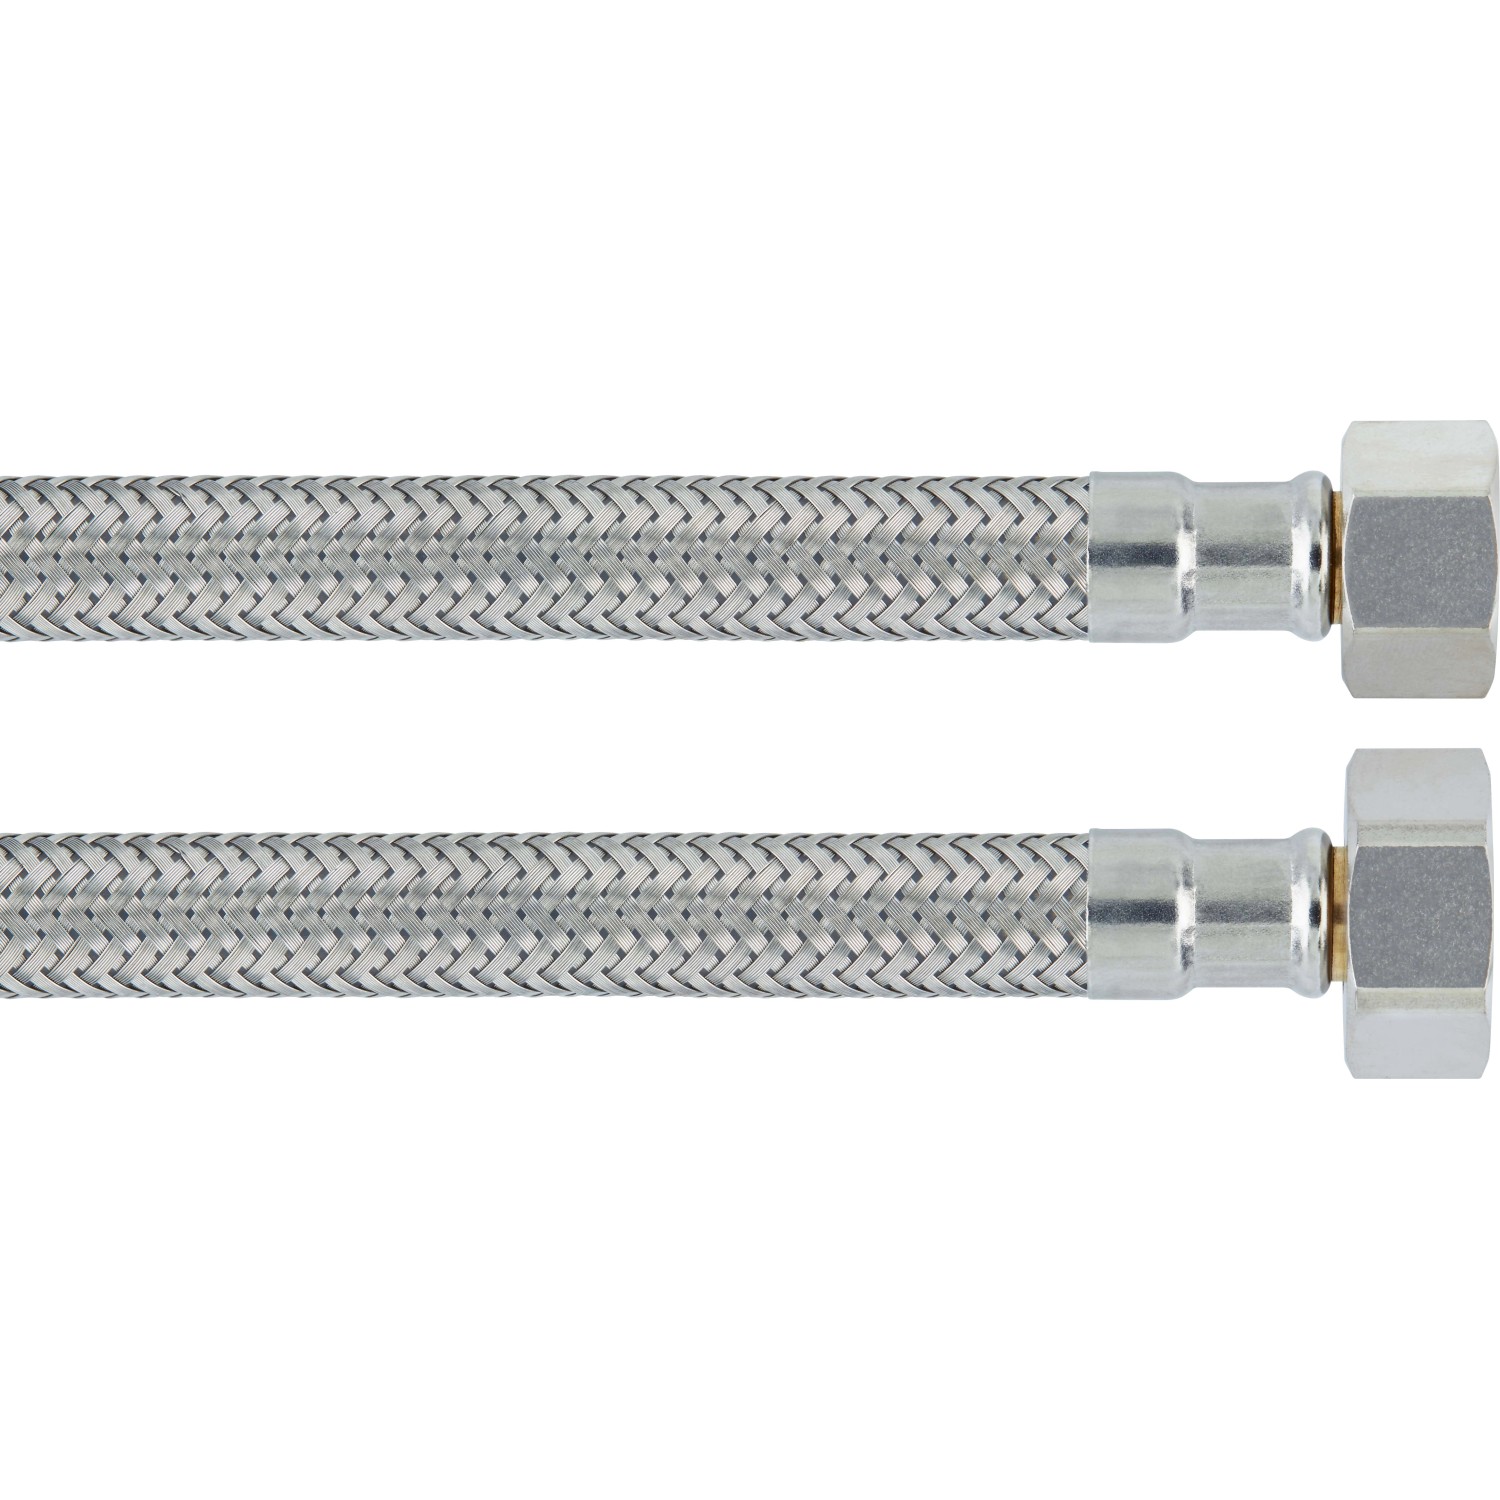 Flex-Winkel-Anschlussschlauch 14,9 mm (G 3/8) / Länge 300 mm kaufen bei OBI